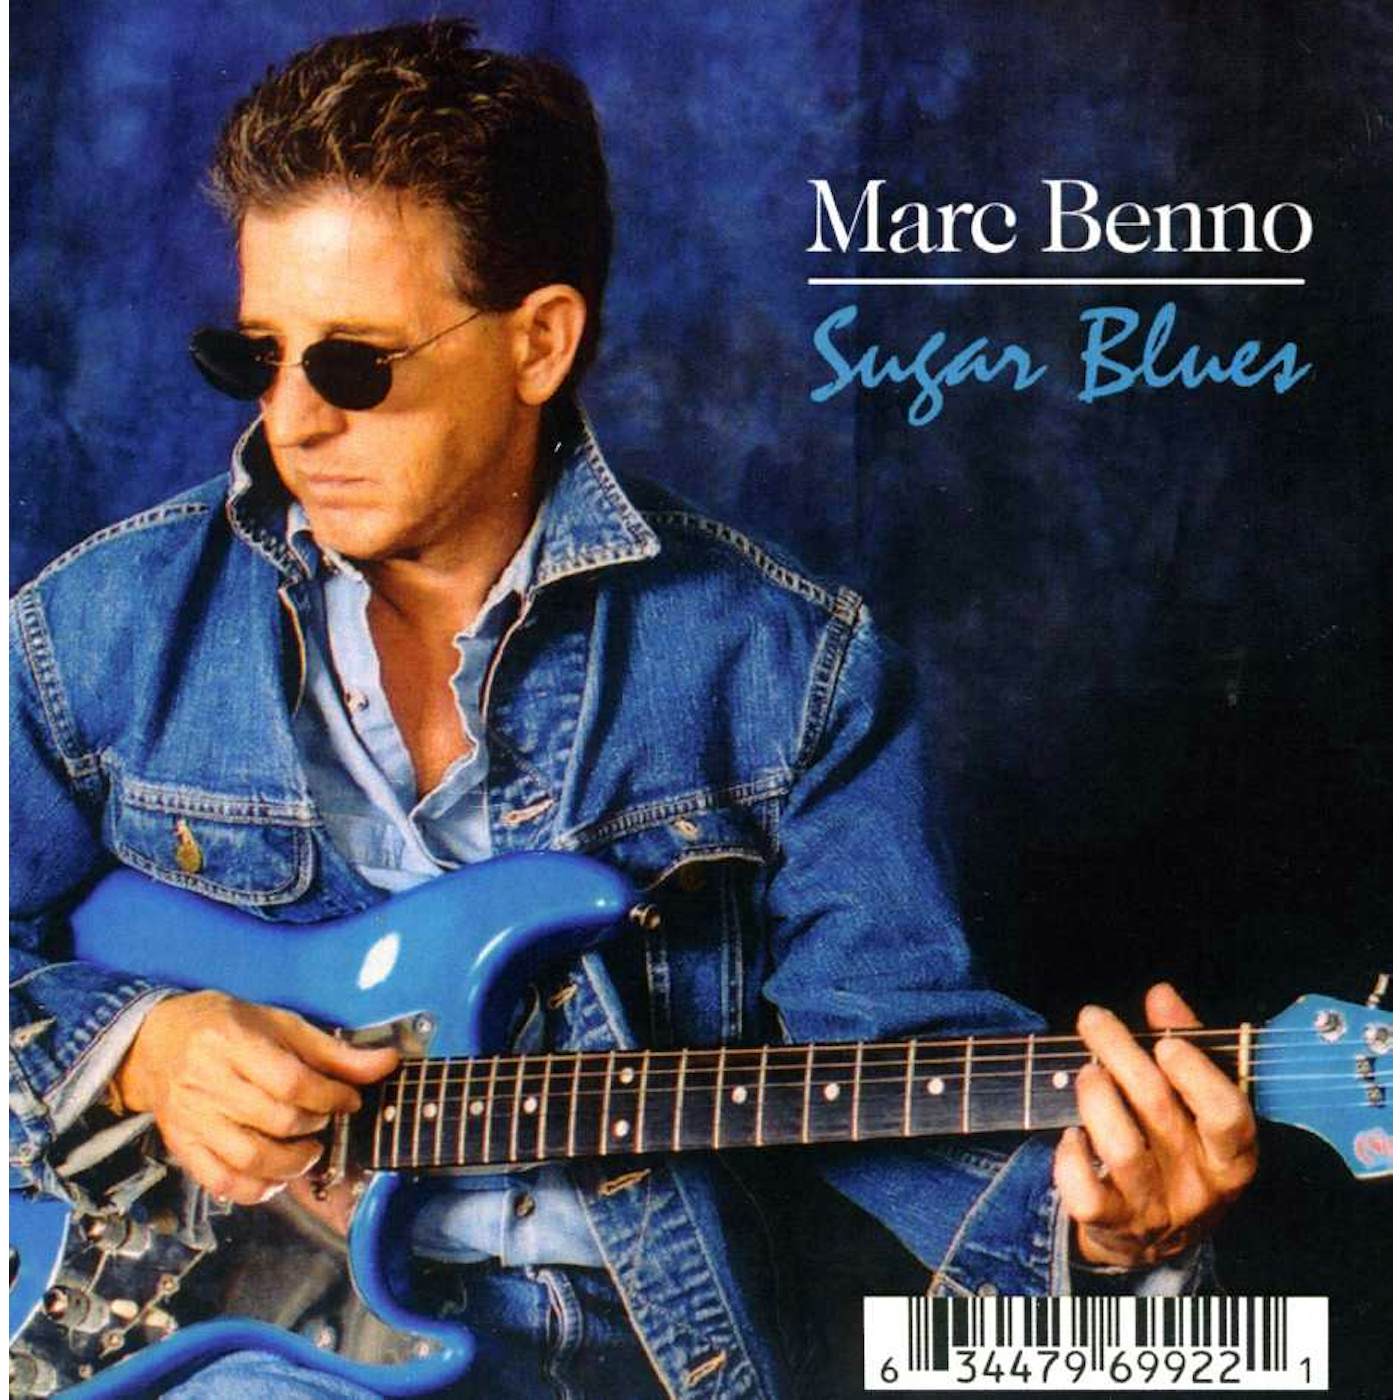 Marc Benno SUGAR BLUES CD